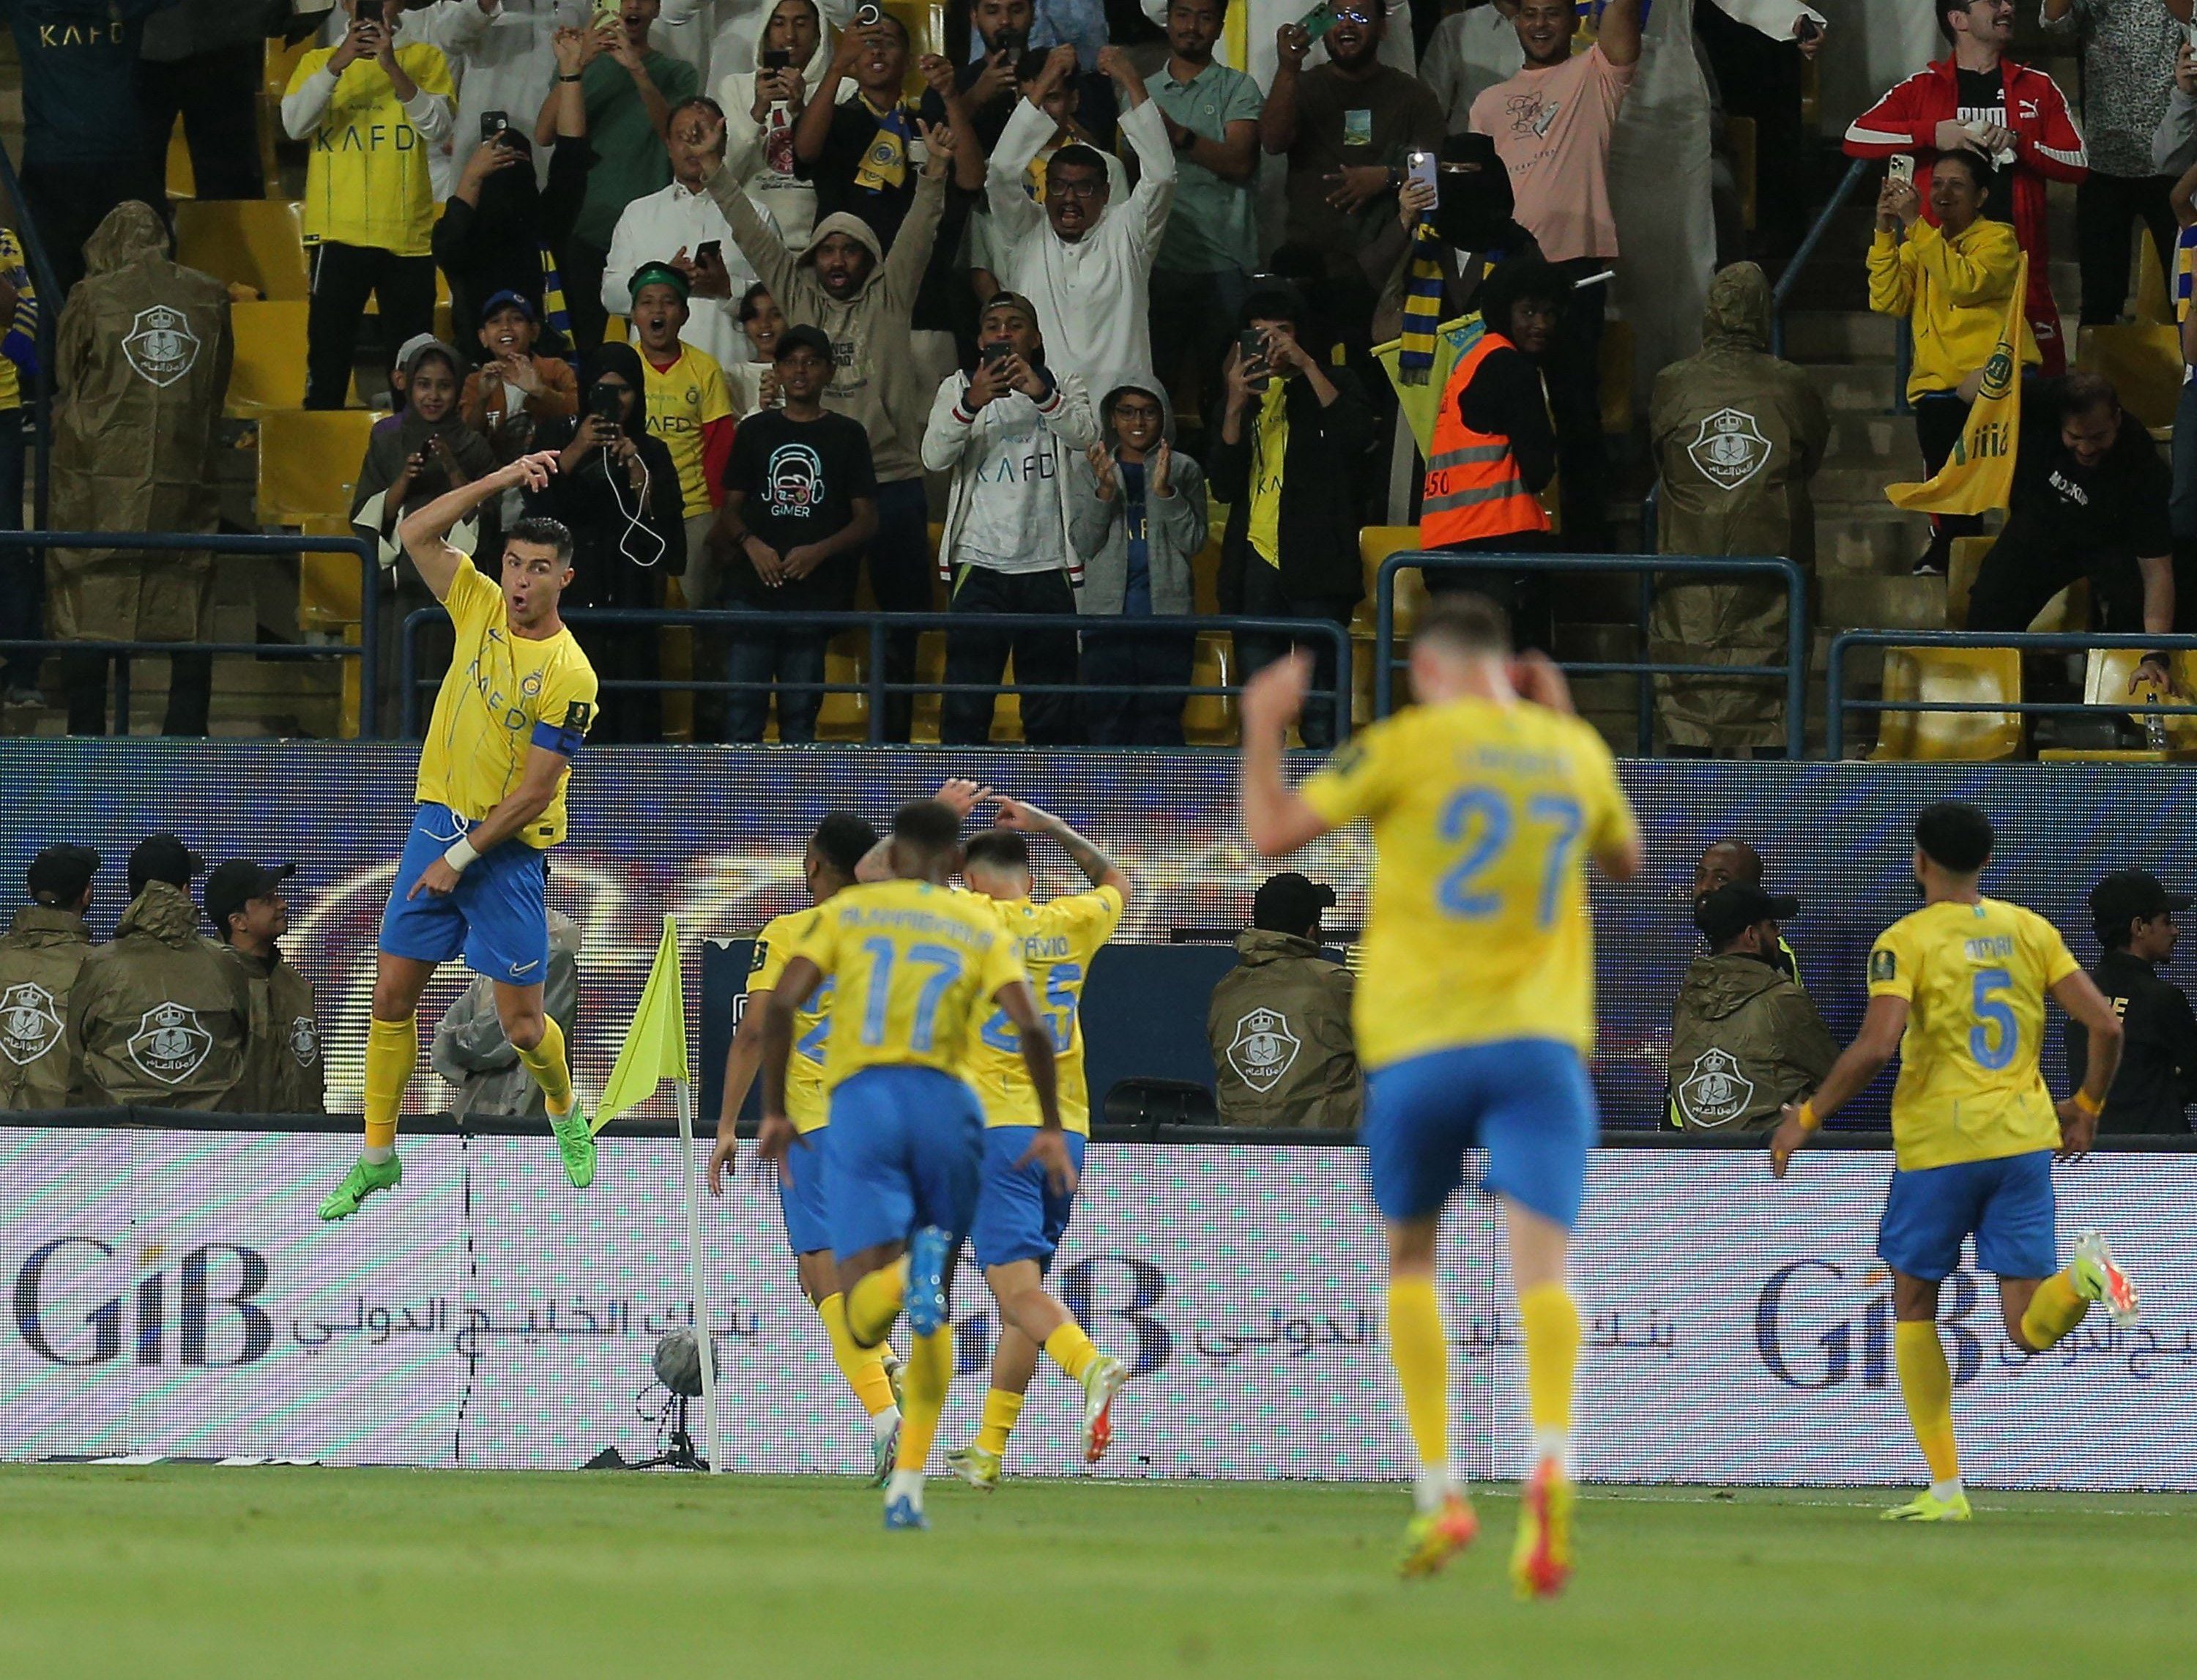 con doblete incluido: cristiano ronaldo alcanza su primera final en el fútbol saudí